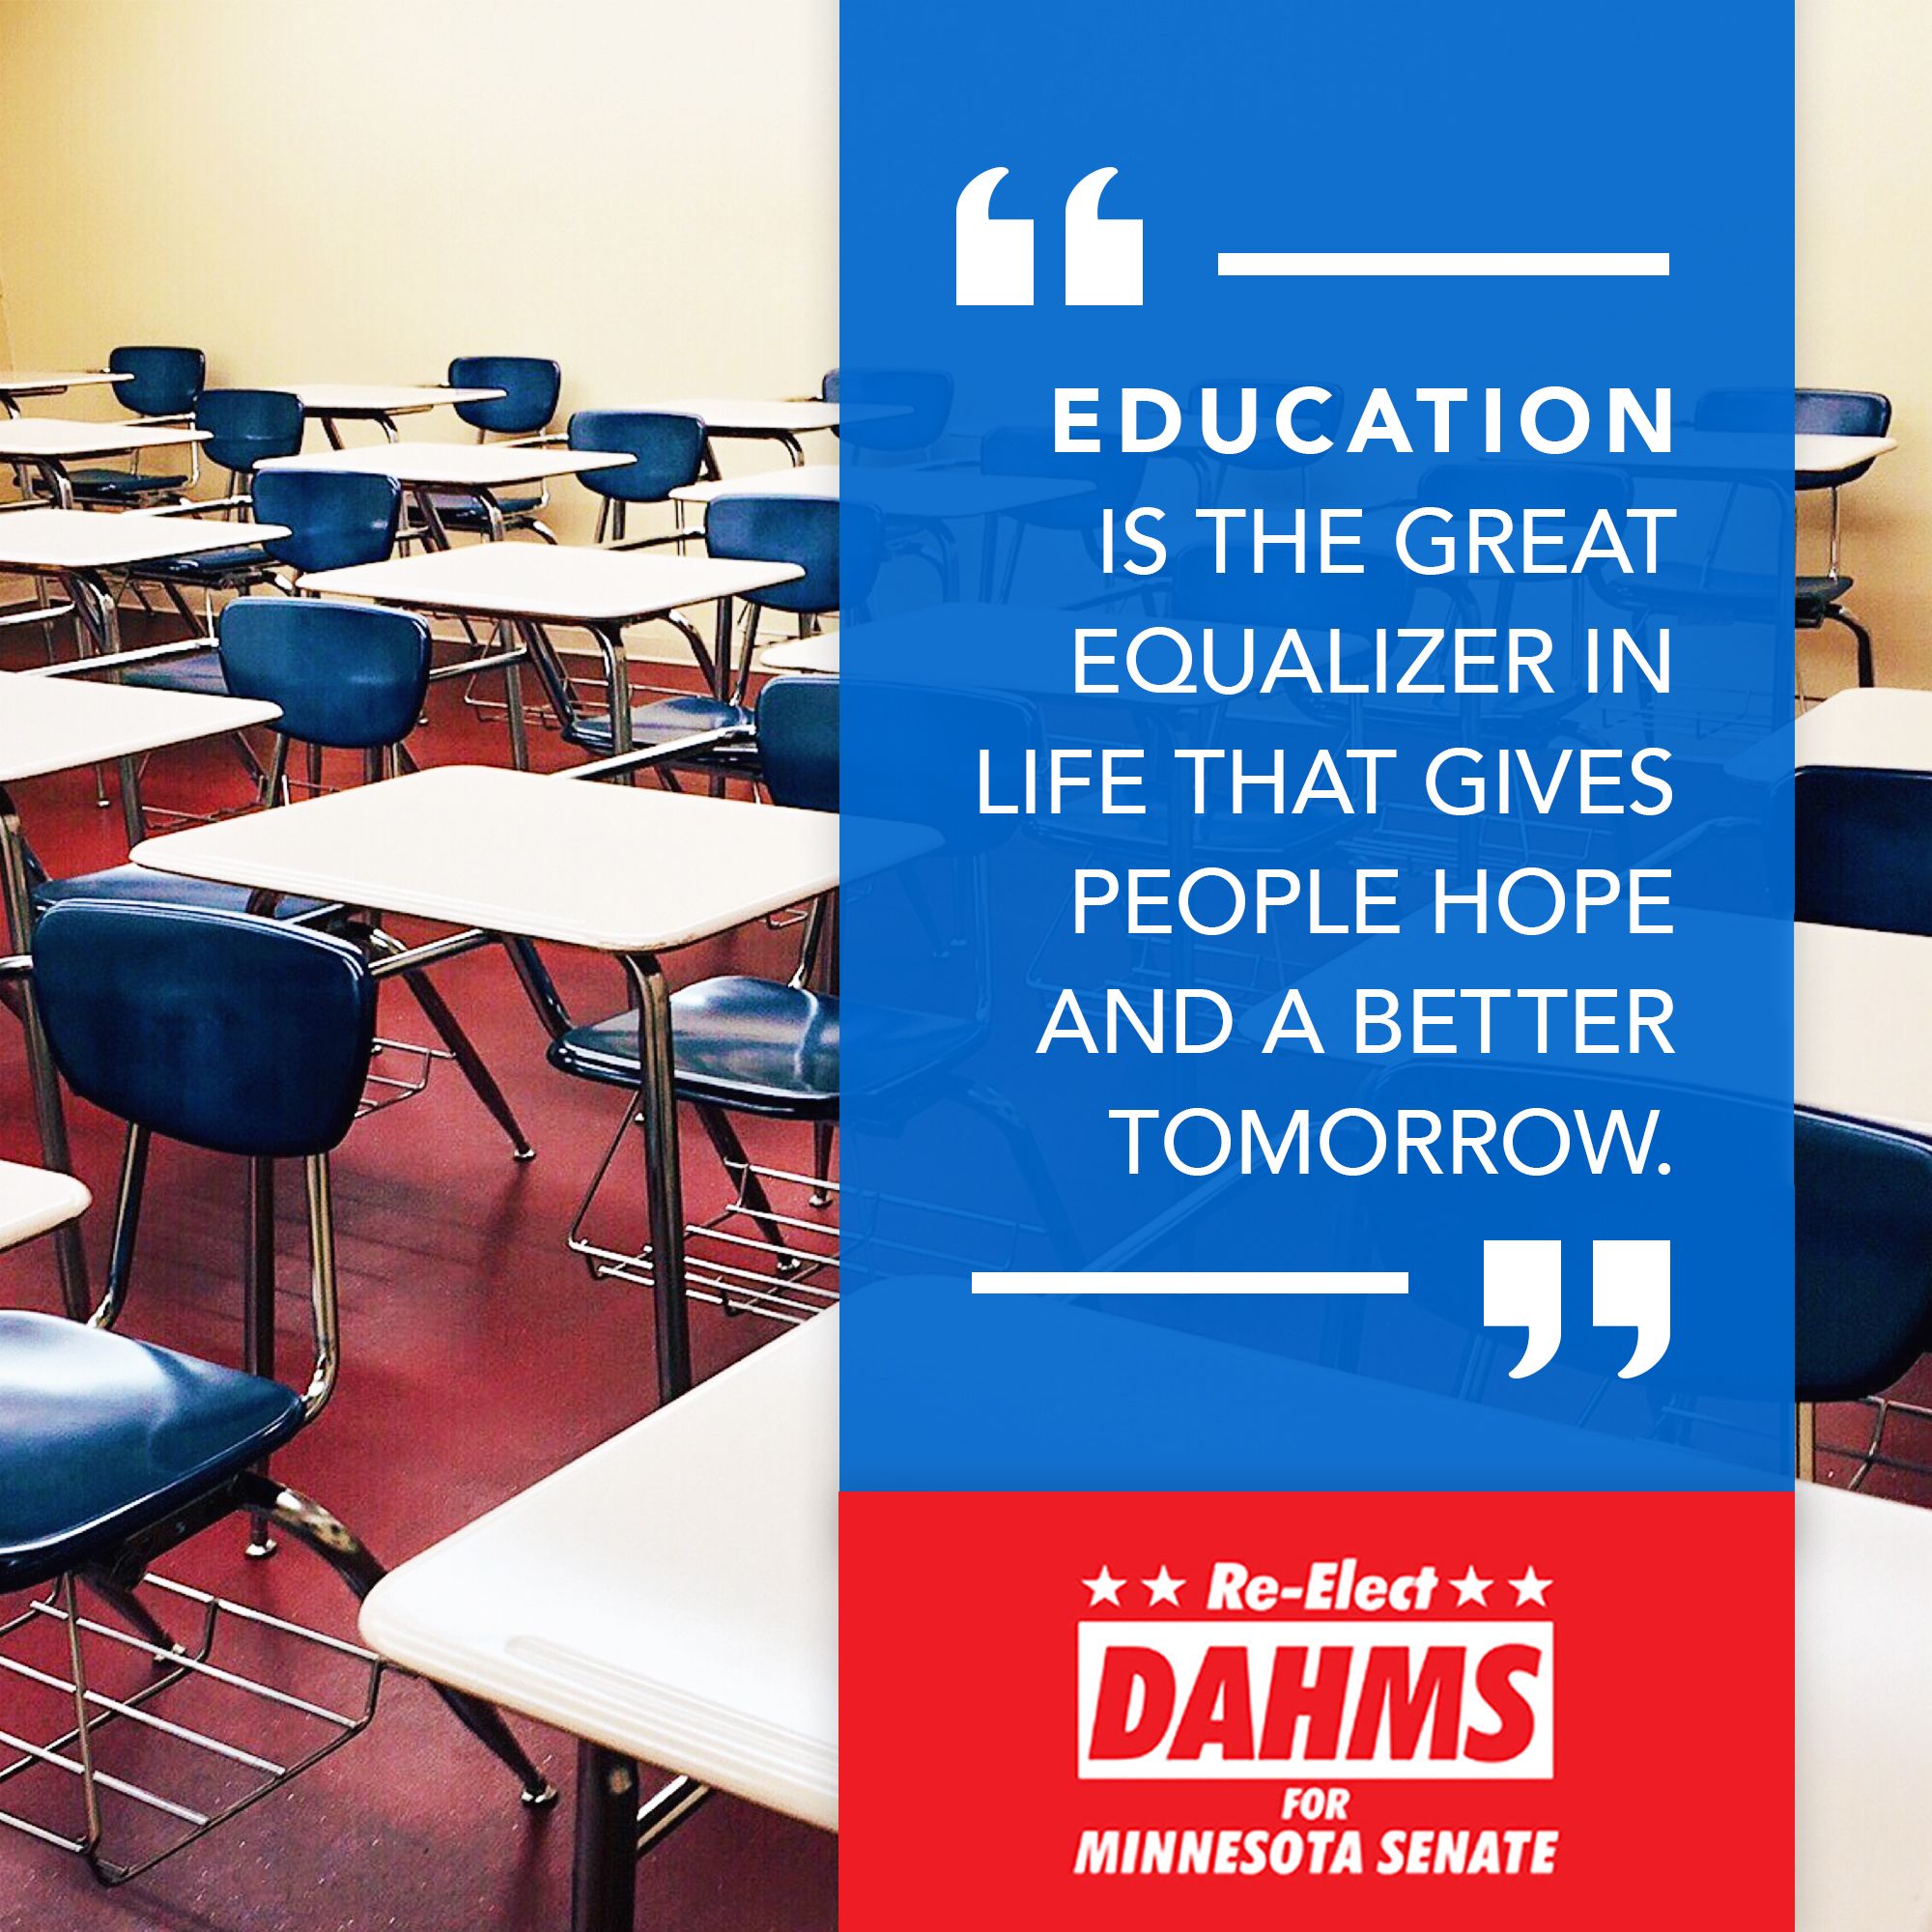 Senator Dahms on Education